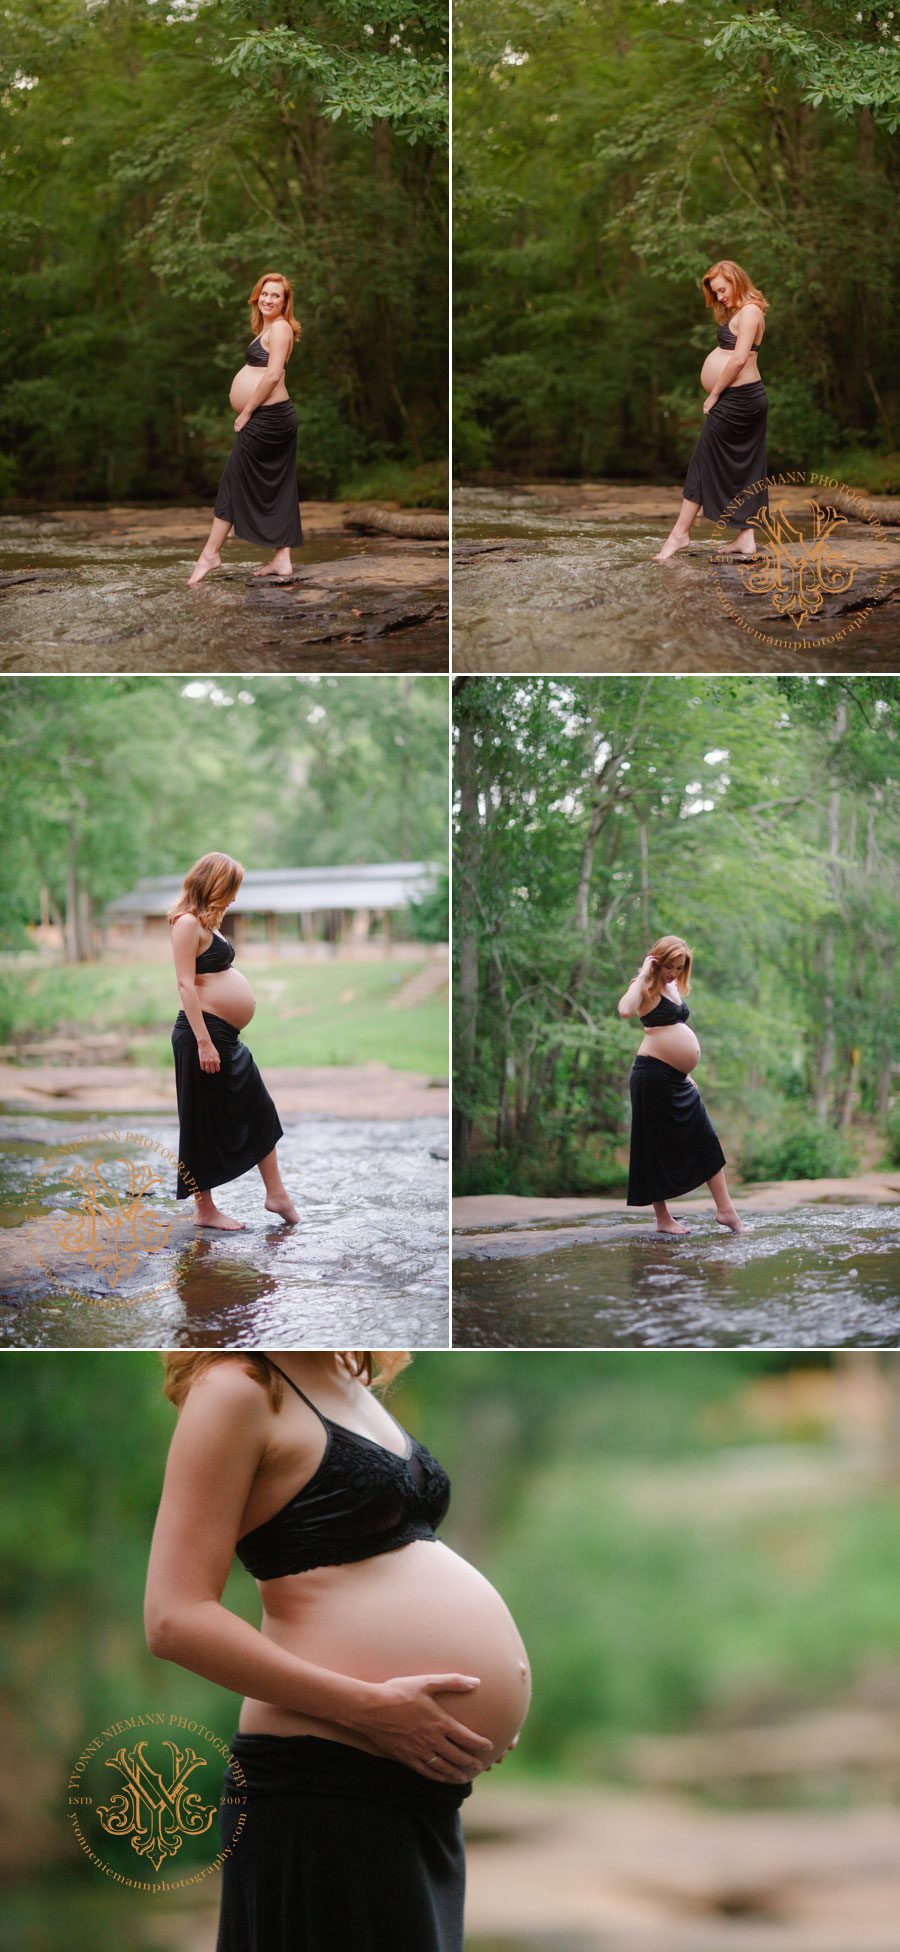 Outdoor pregnancy photo shoot on shoals in Oconee County GA.